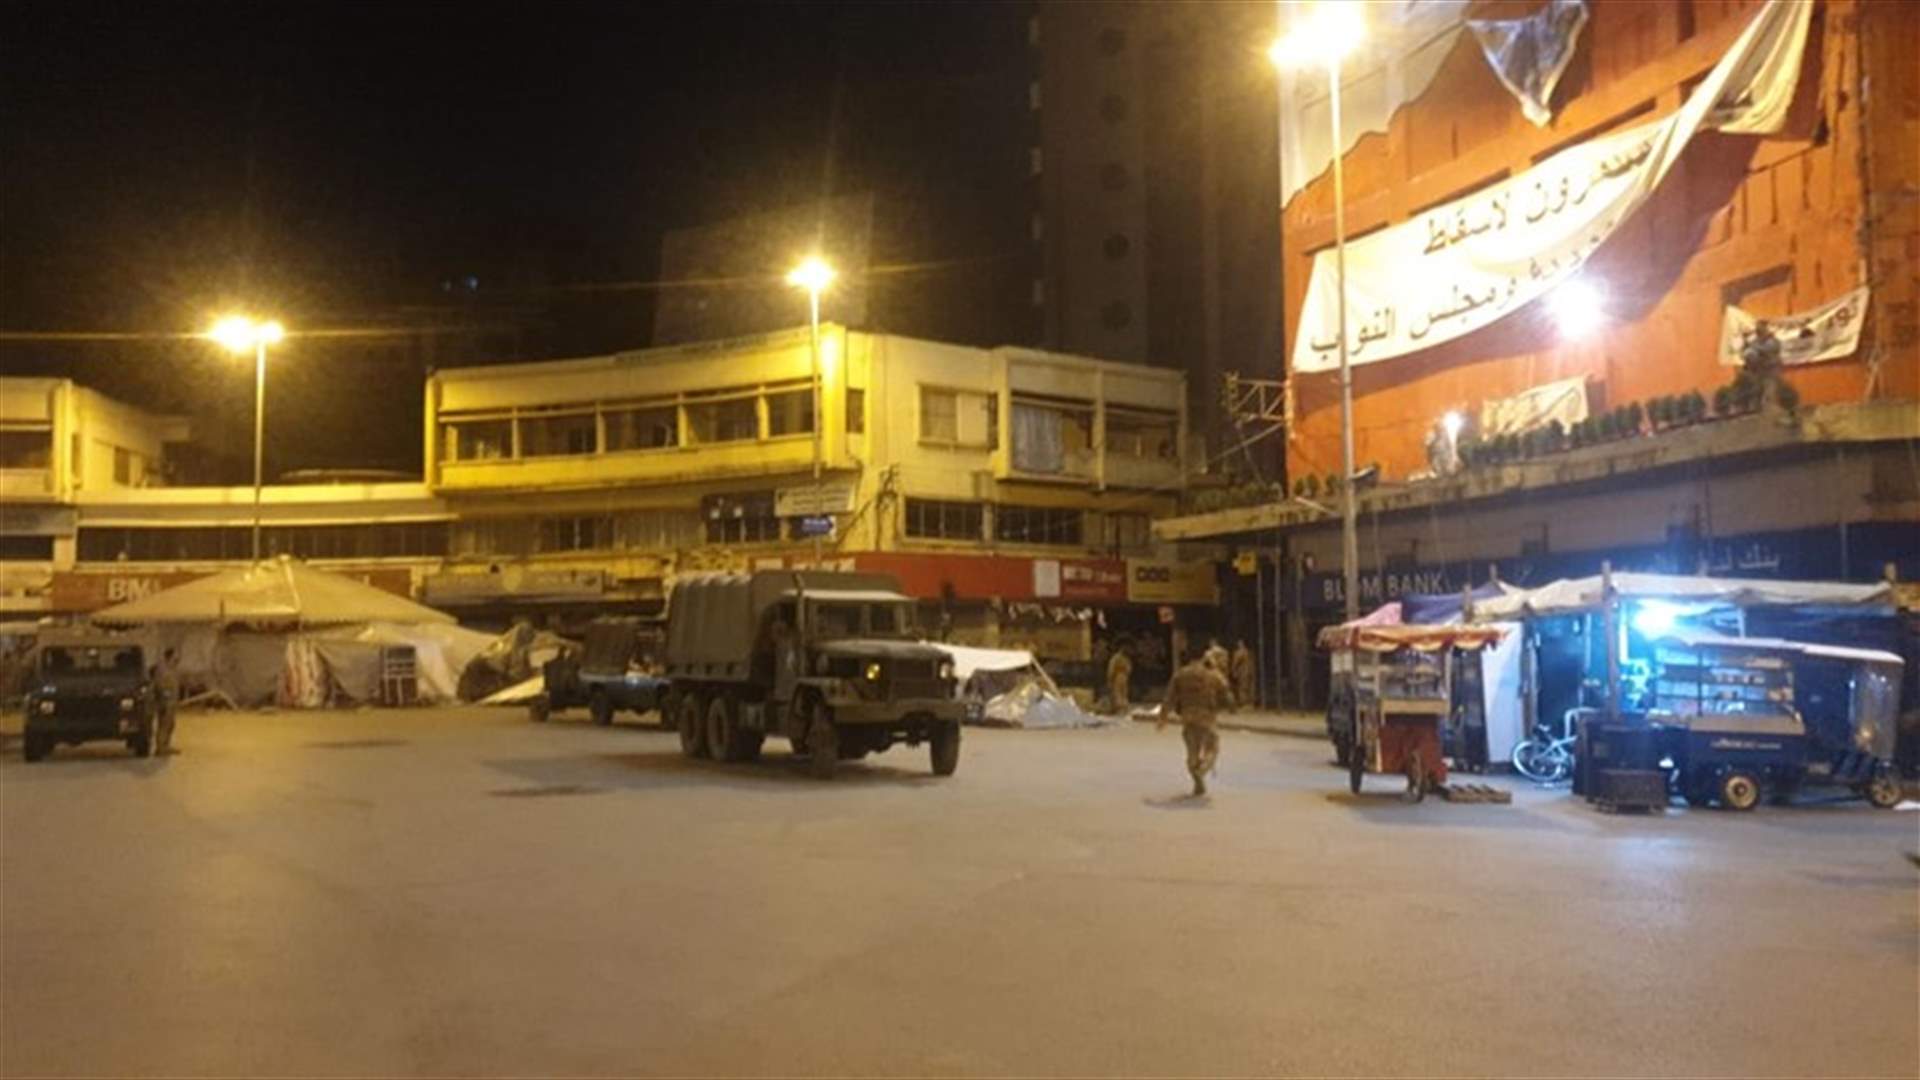 الجيش يعمل على اعادة فتح الطريق عند ساحة النور في طرابلس (فيديو)